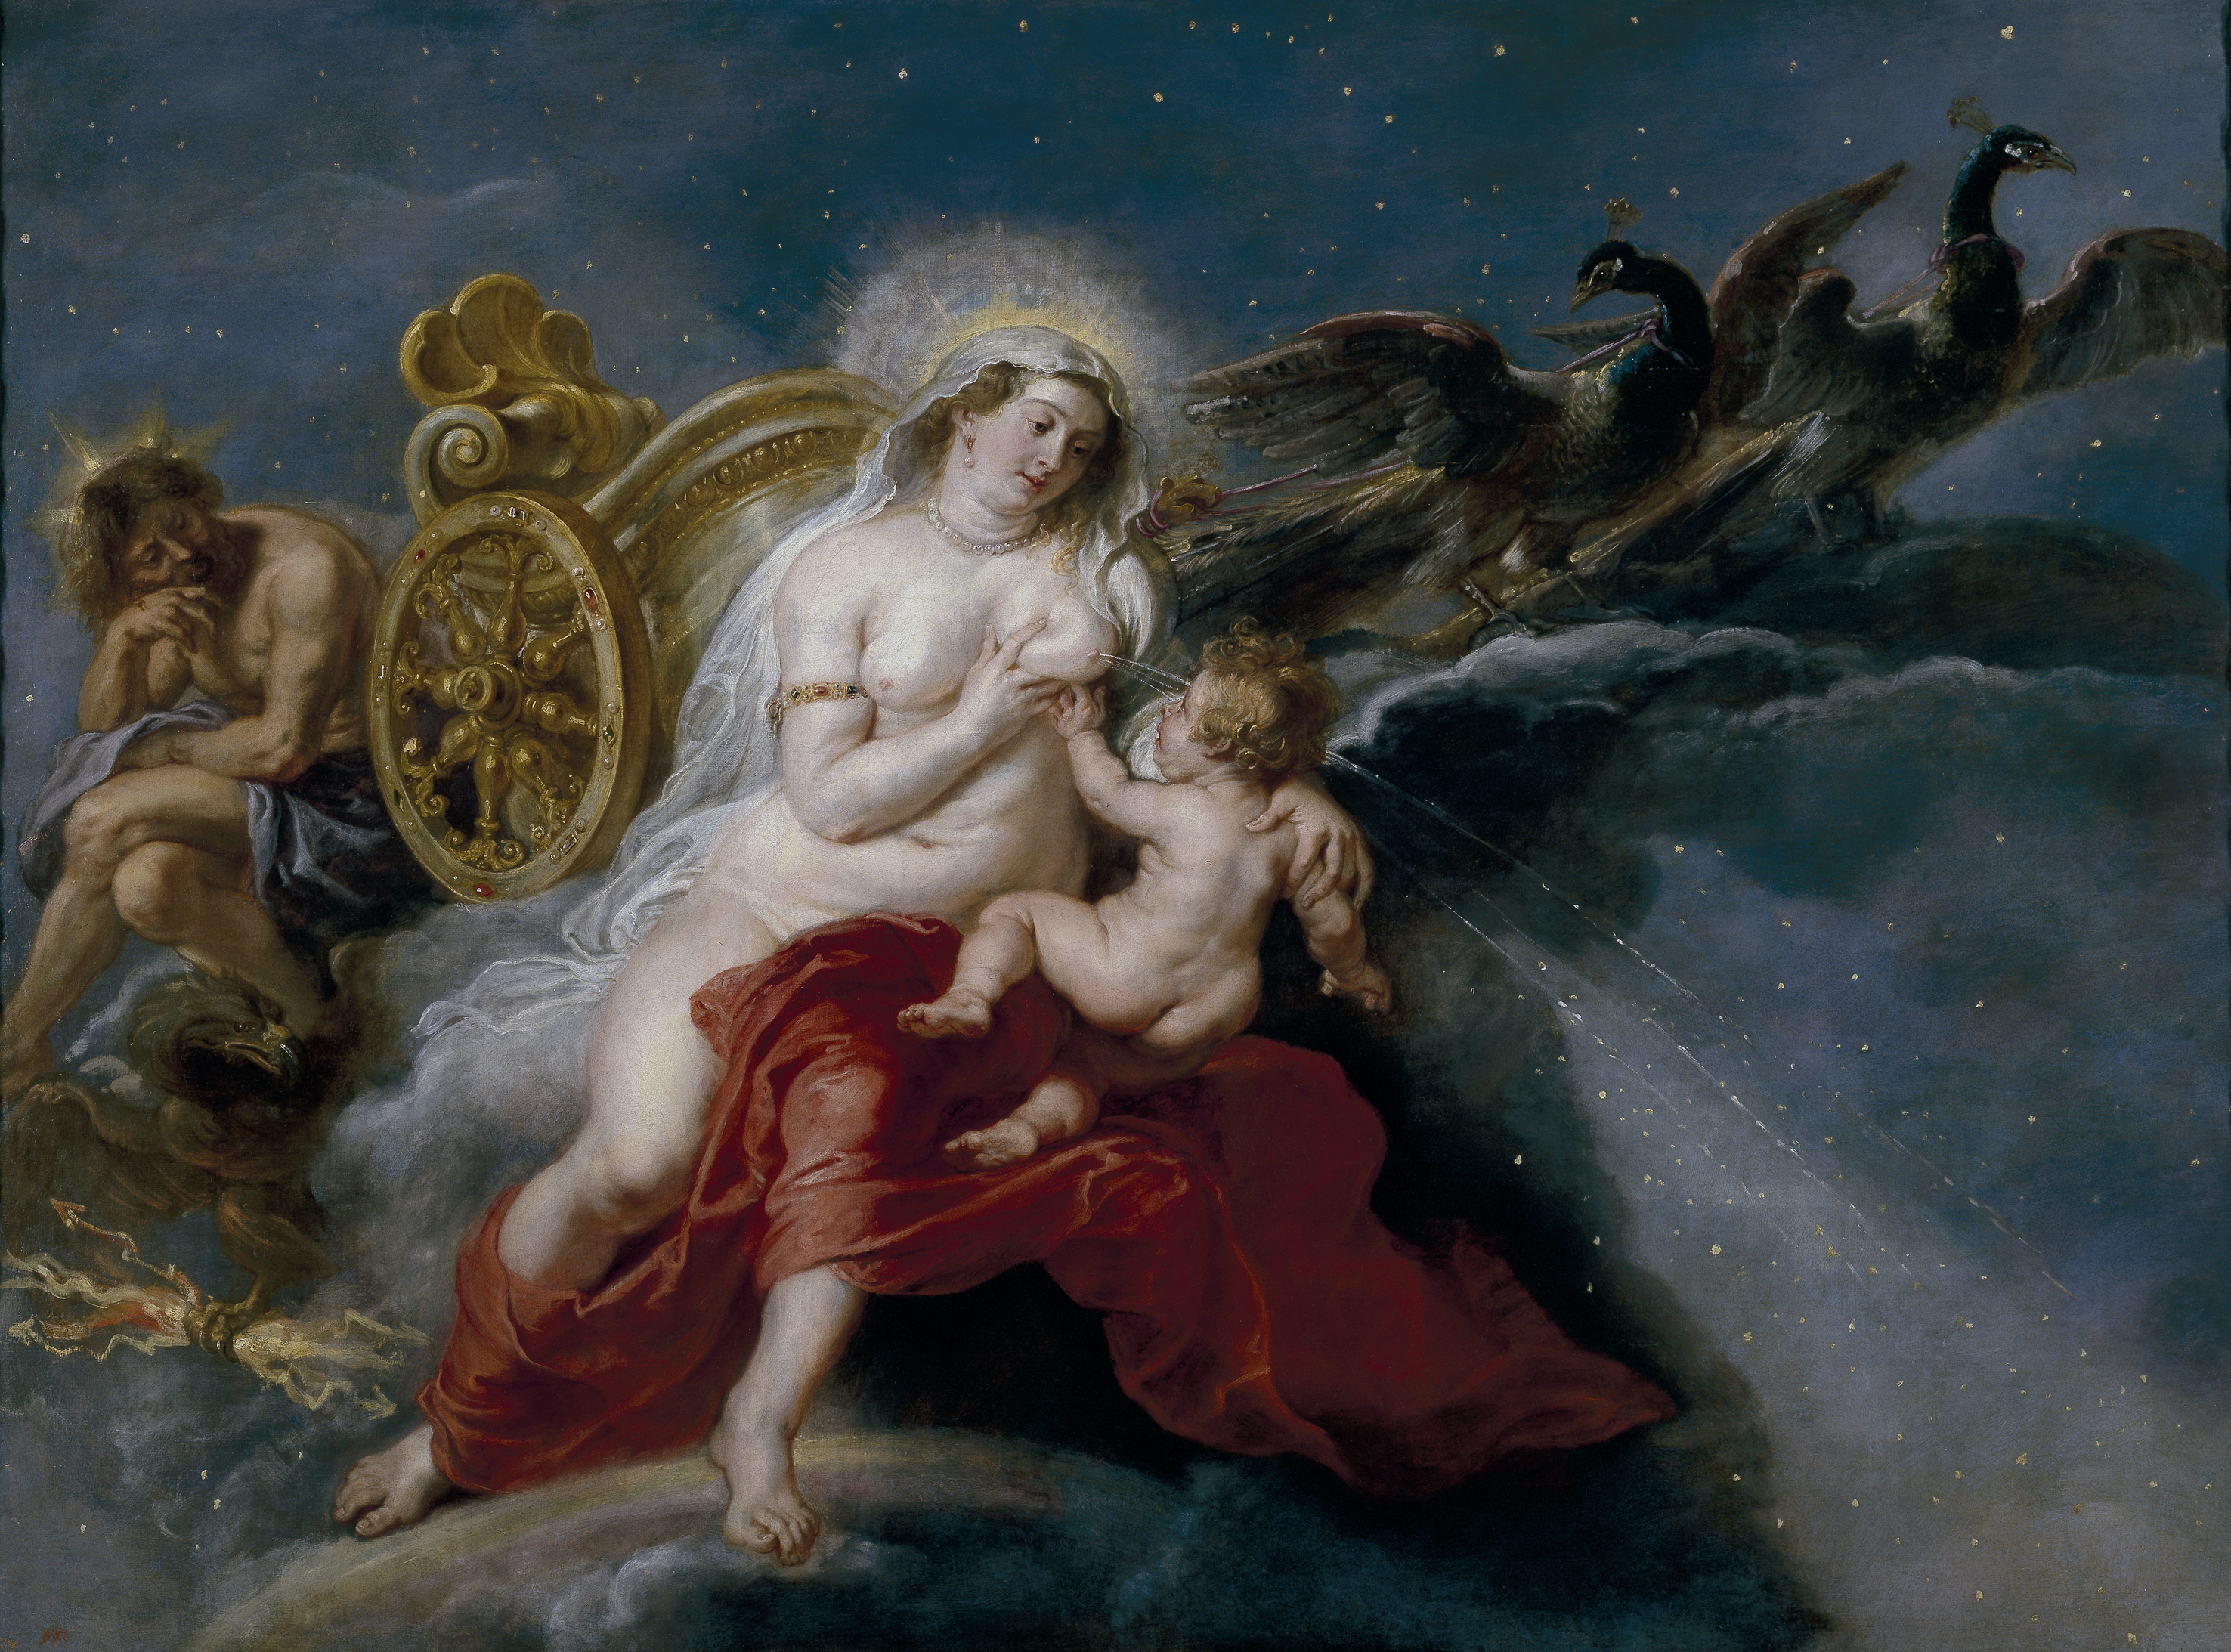 Originea Căii Lactee by Peter Paul Rubens - cca. 1637 - 181 cm × 244 cm 